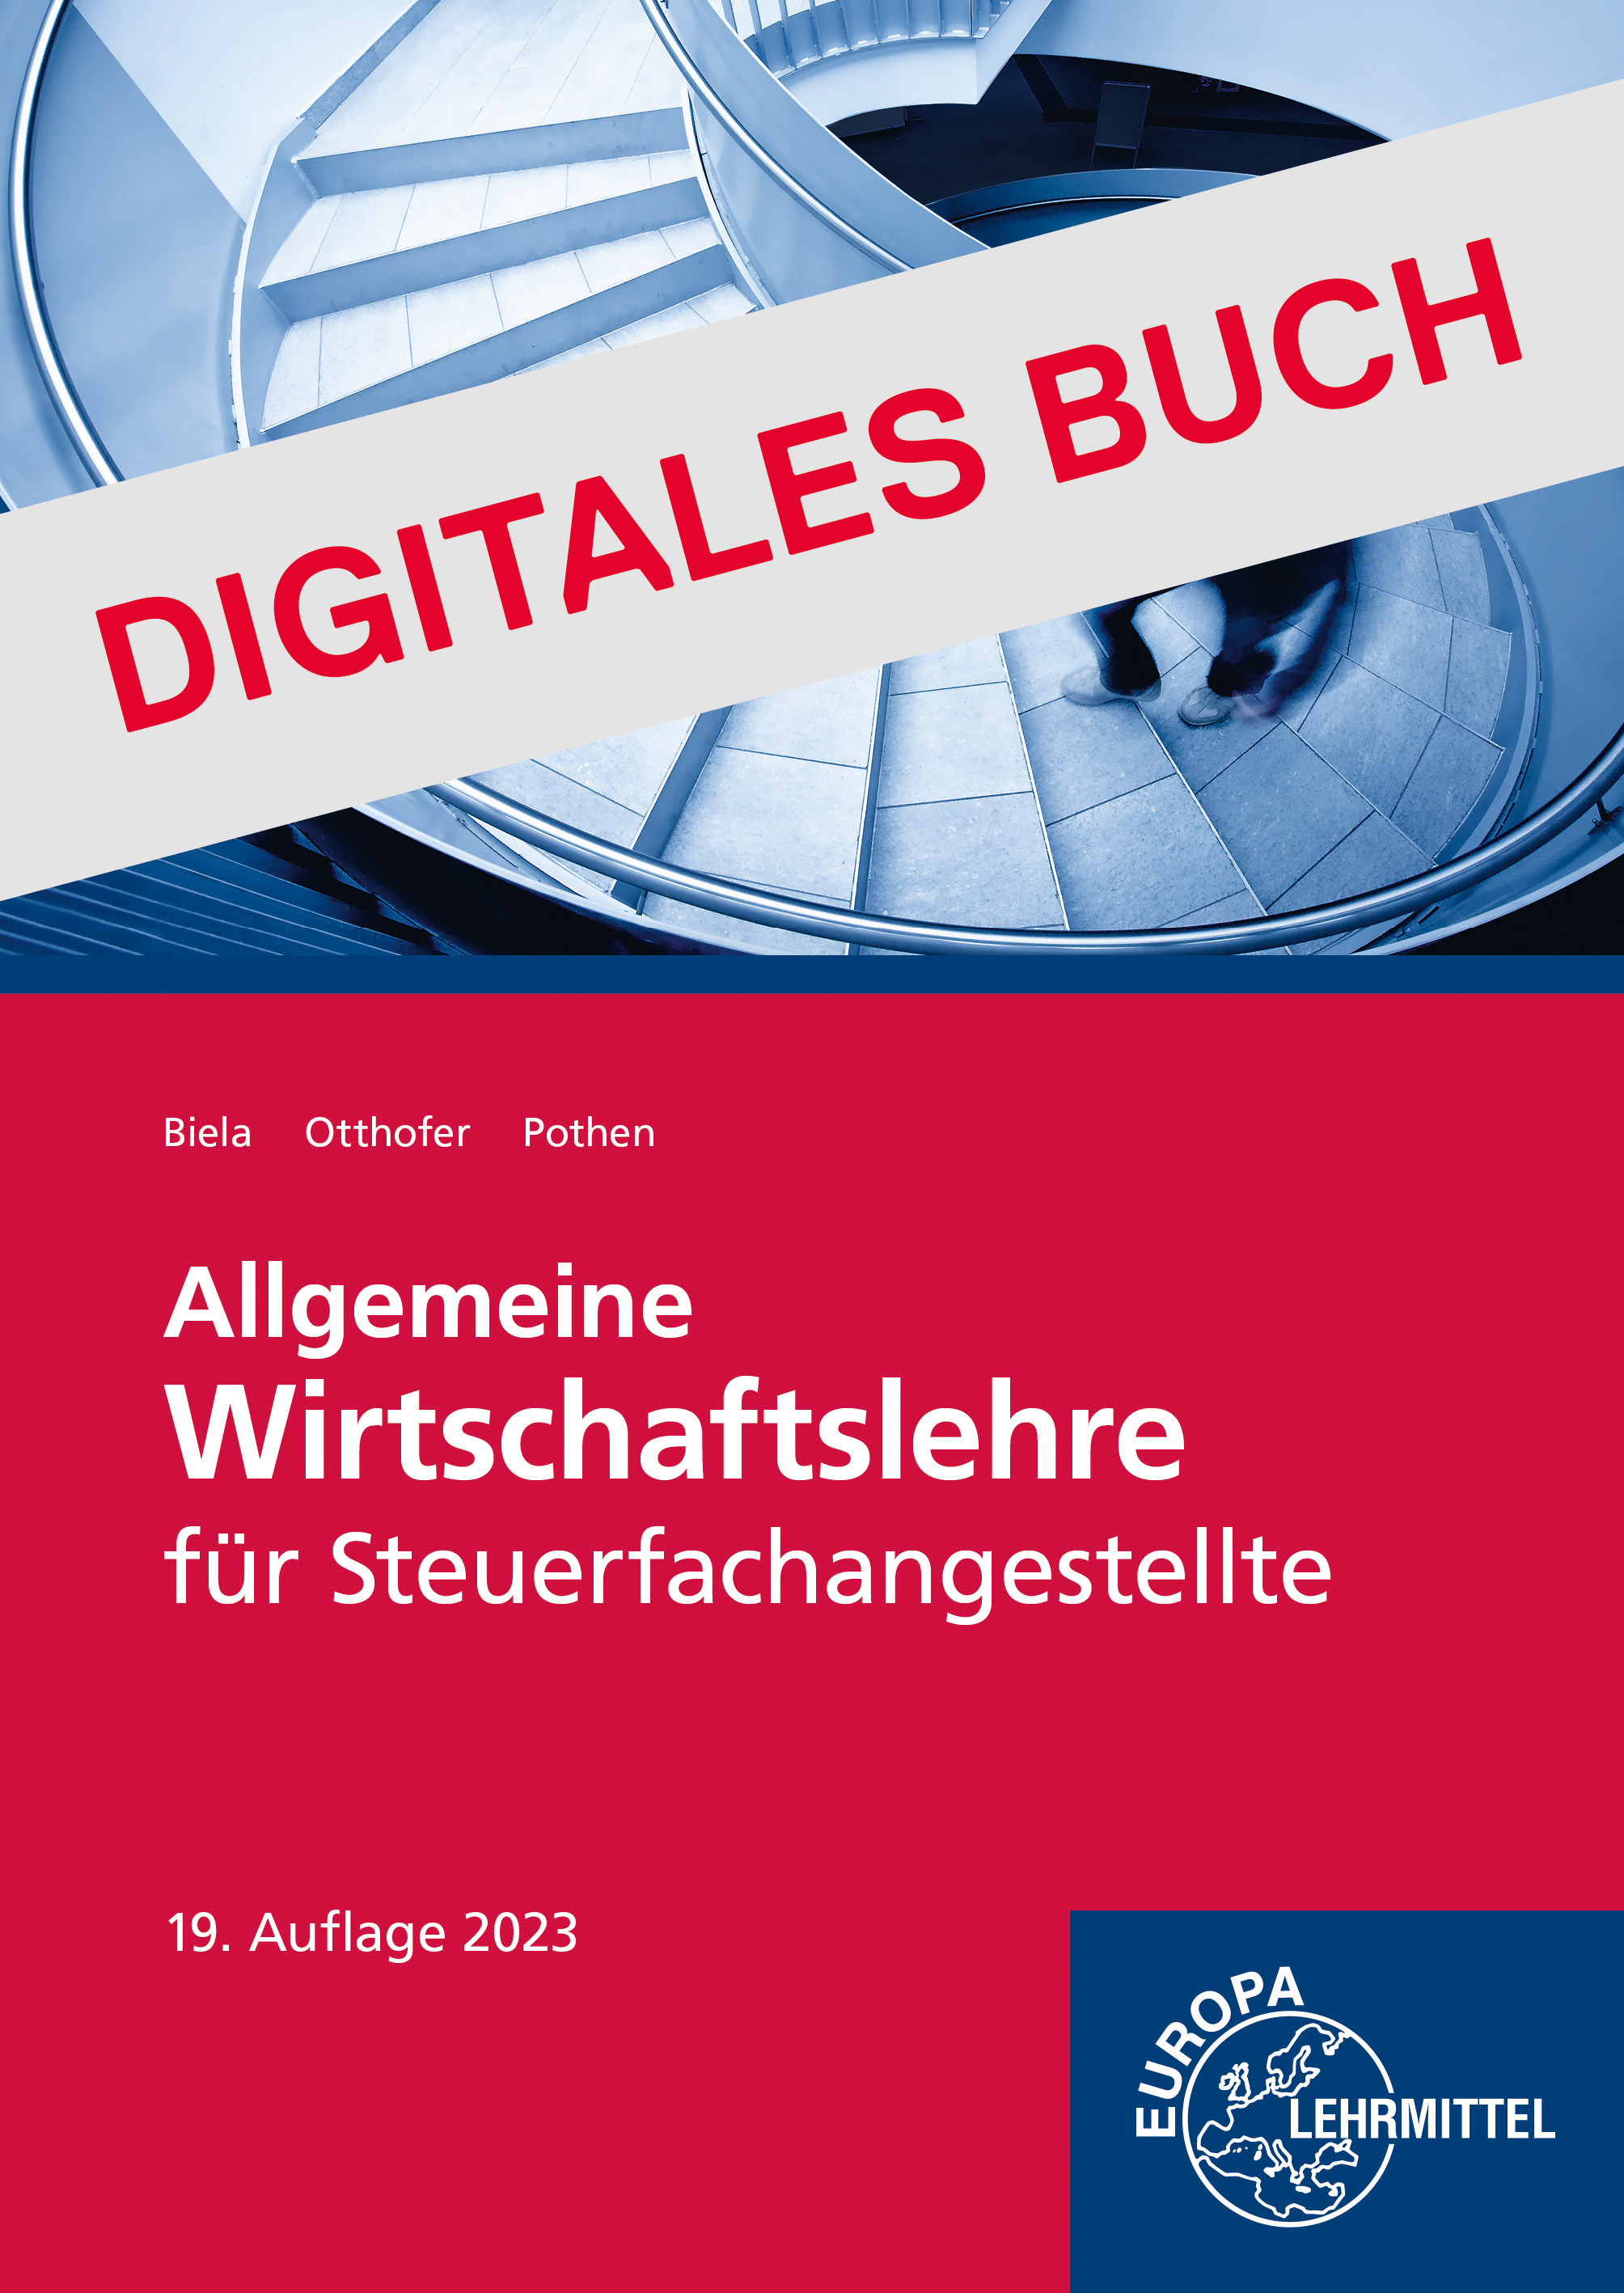 Allgemeine Wirtschaftslehre für Steuerfachangestellte - Digitales Buch